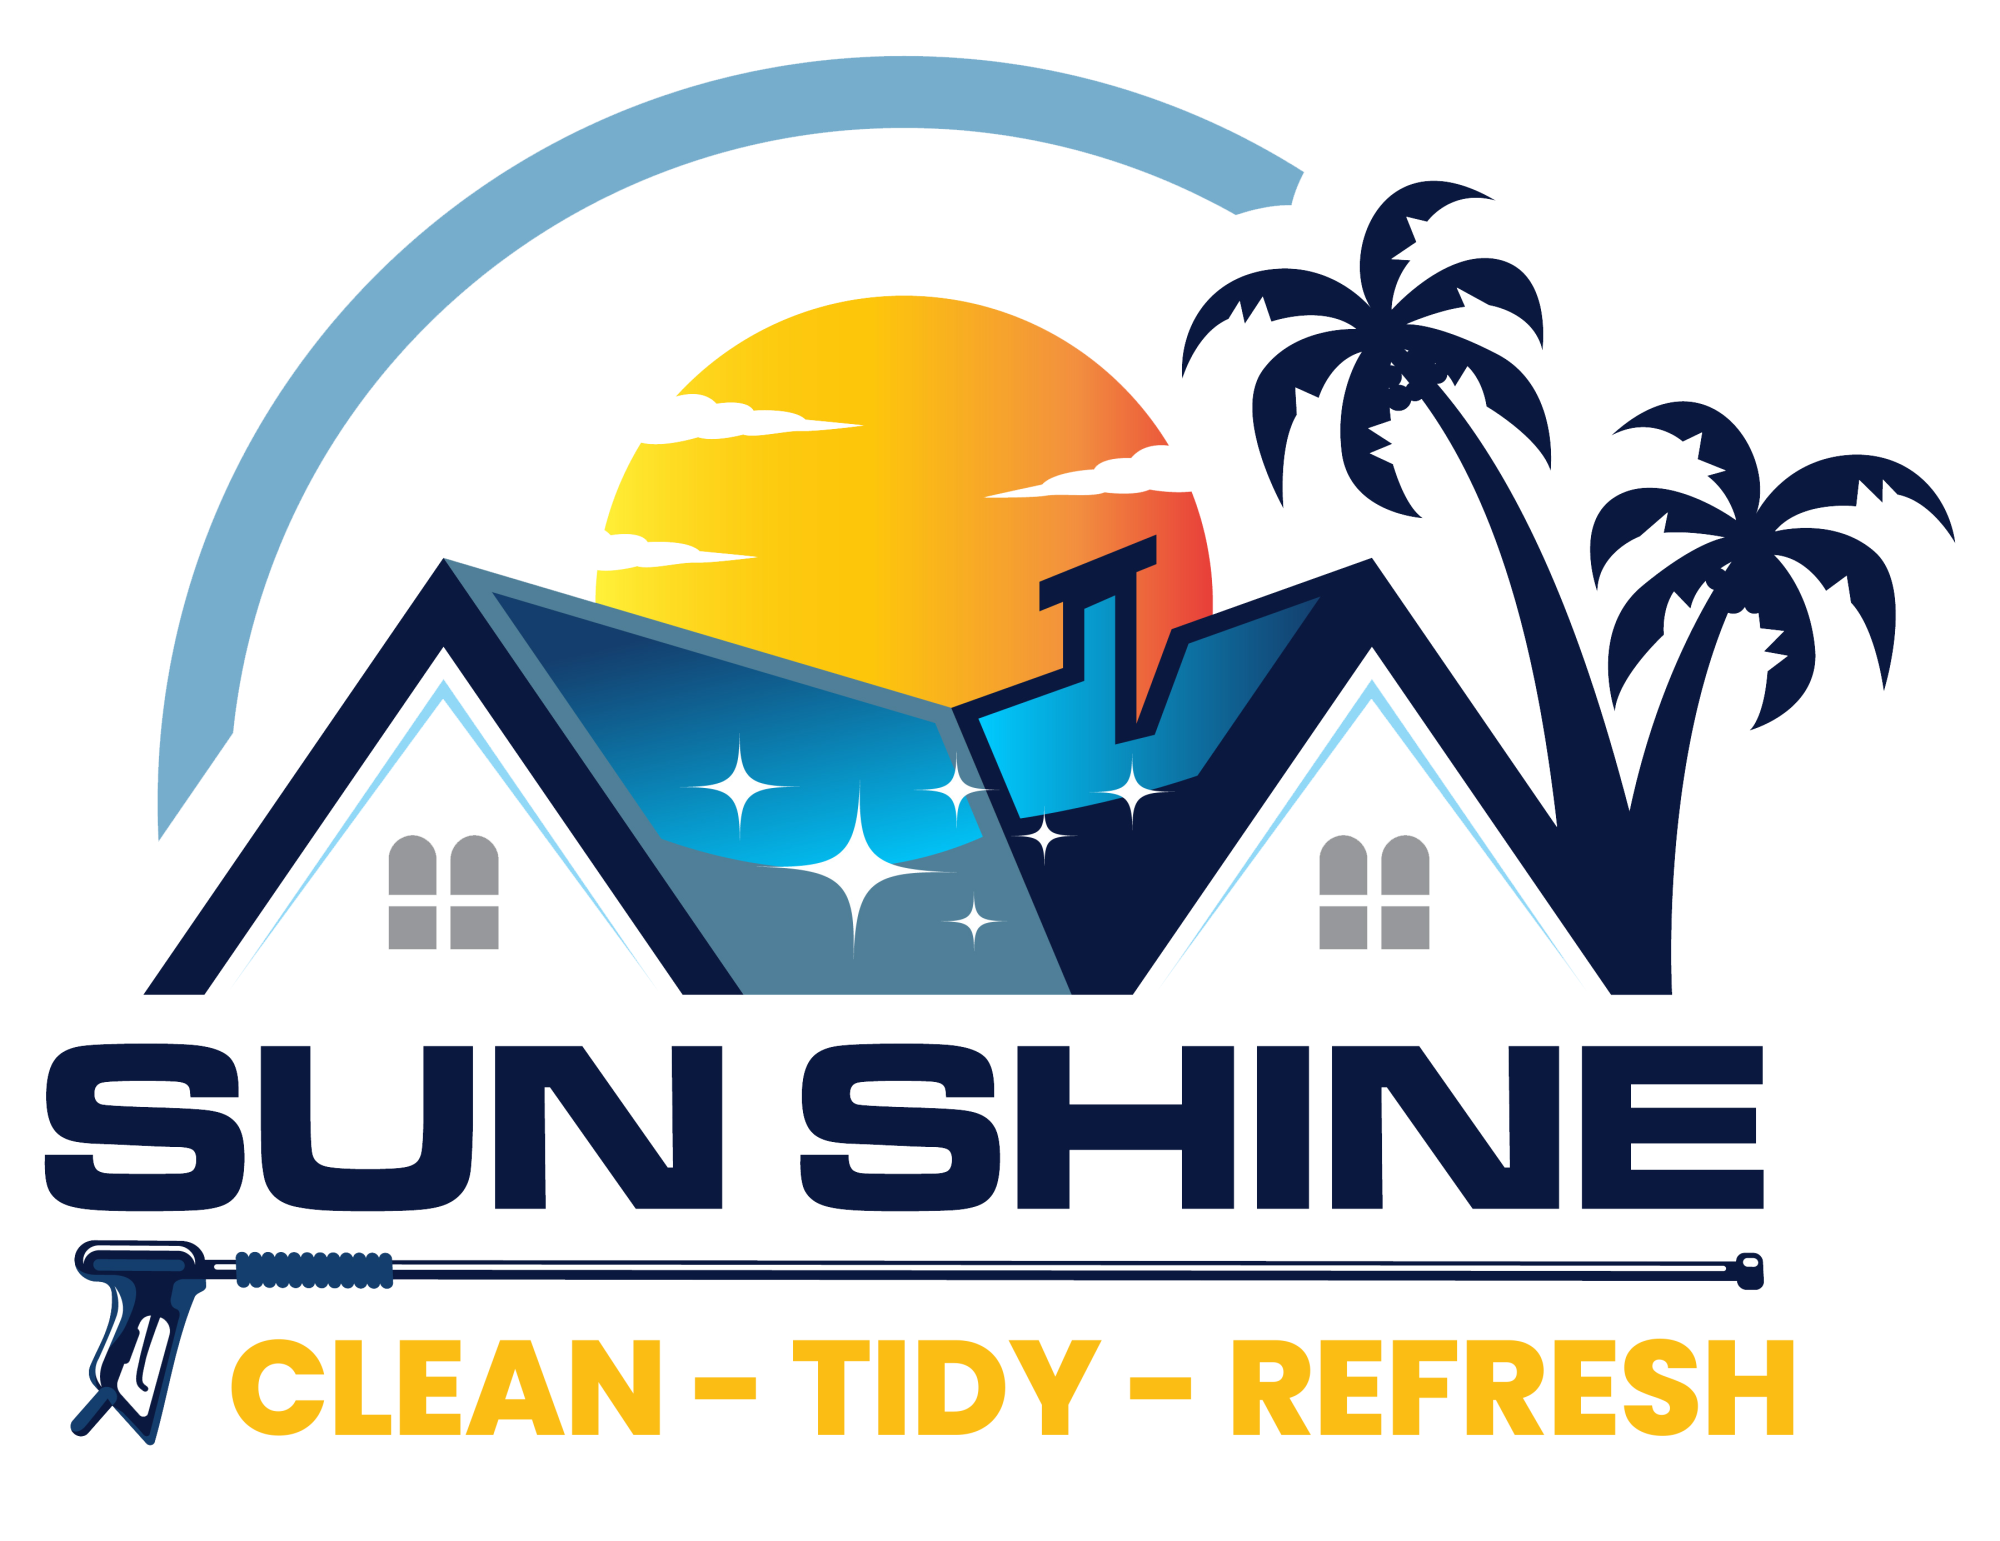 Sun Shine Tdy Refresh Final Logo